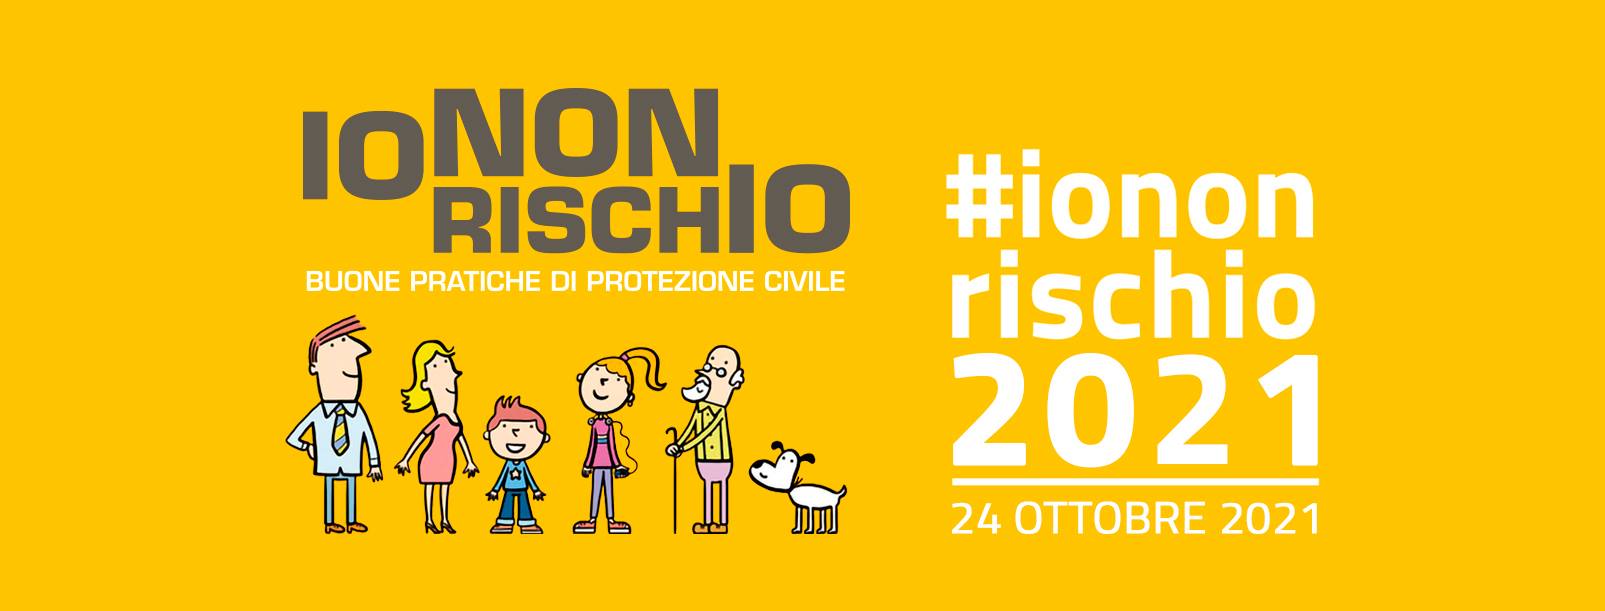 “Io non rischio 20-21”: il Piemonte aderisce alla Campagna nazionale per le buone pratiche di Protezione Civile